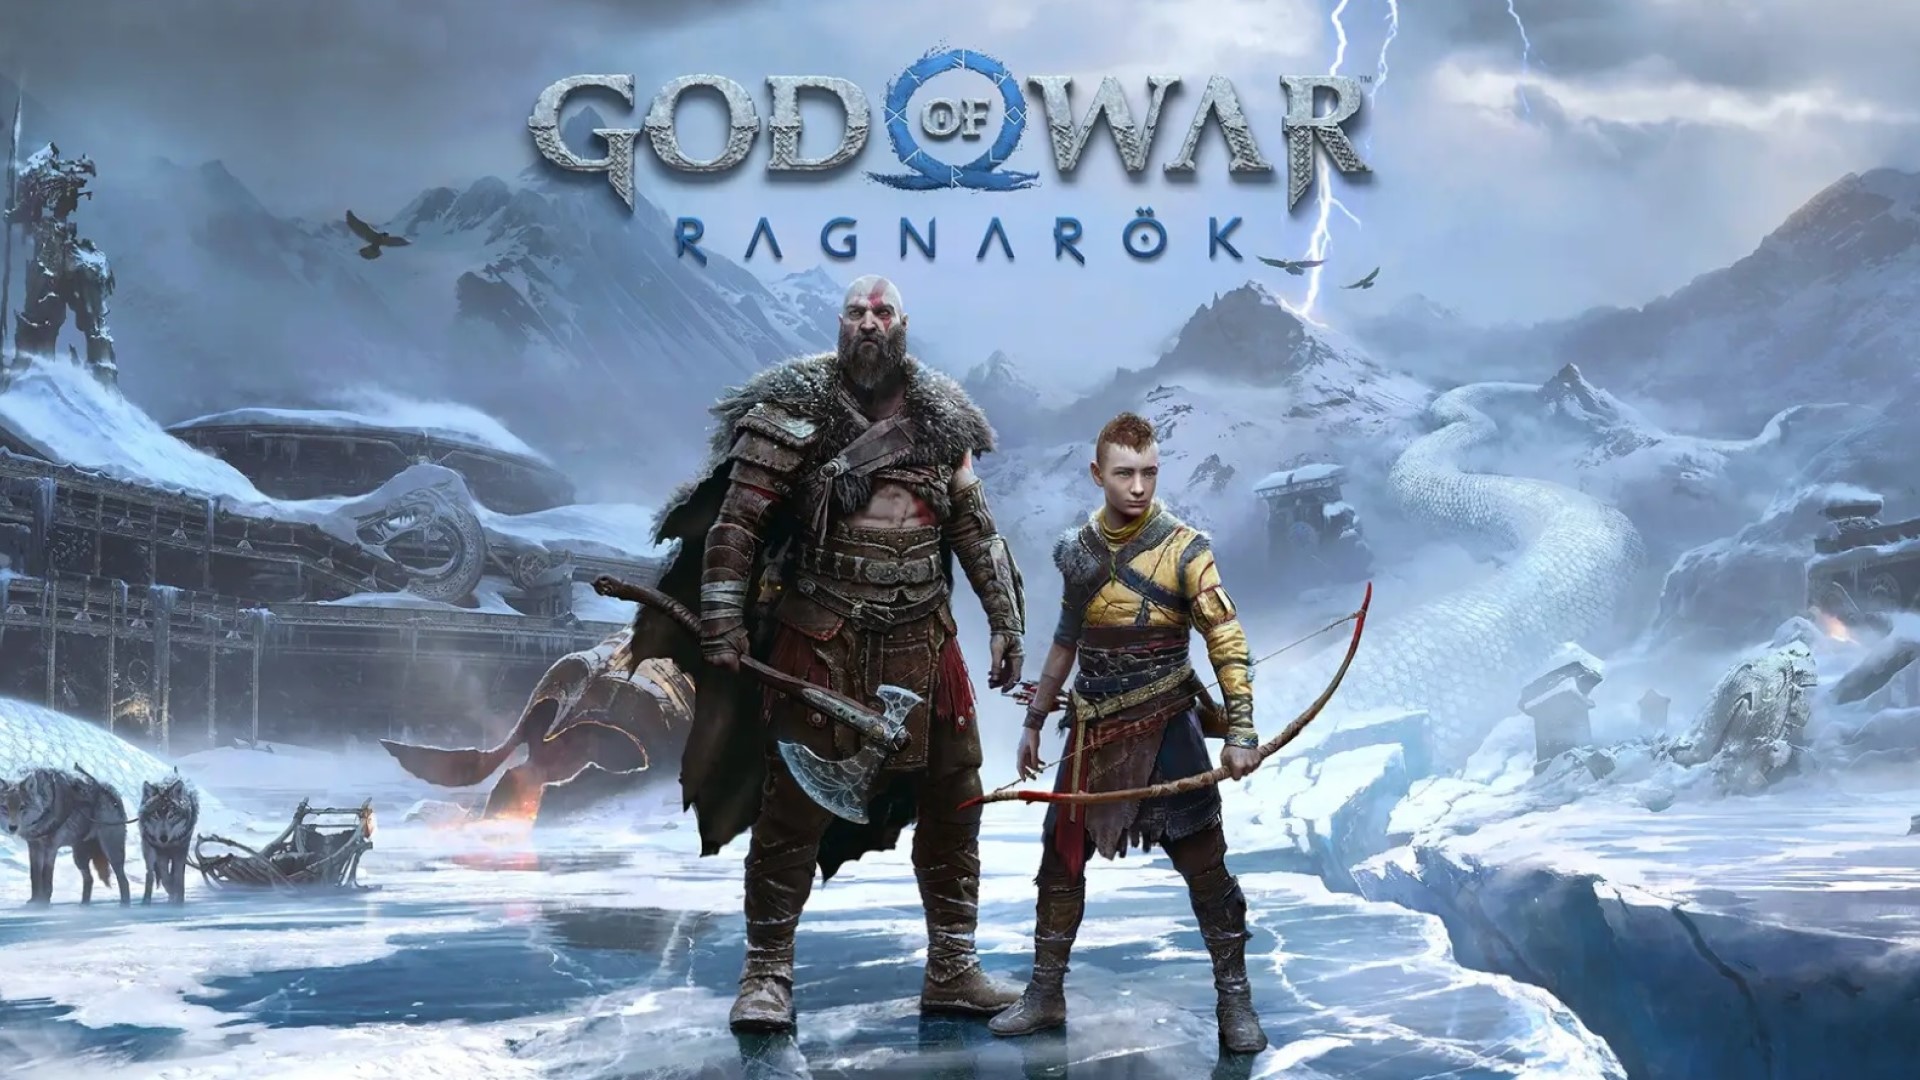 download god of war ragnarök reddit for free